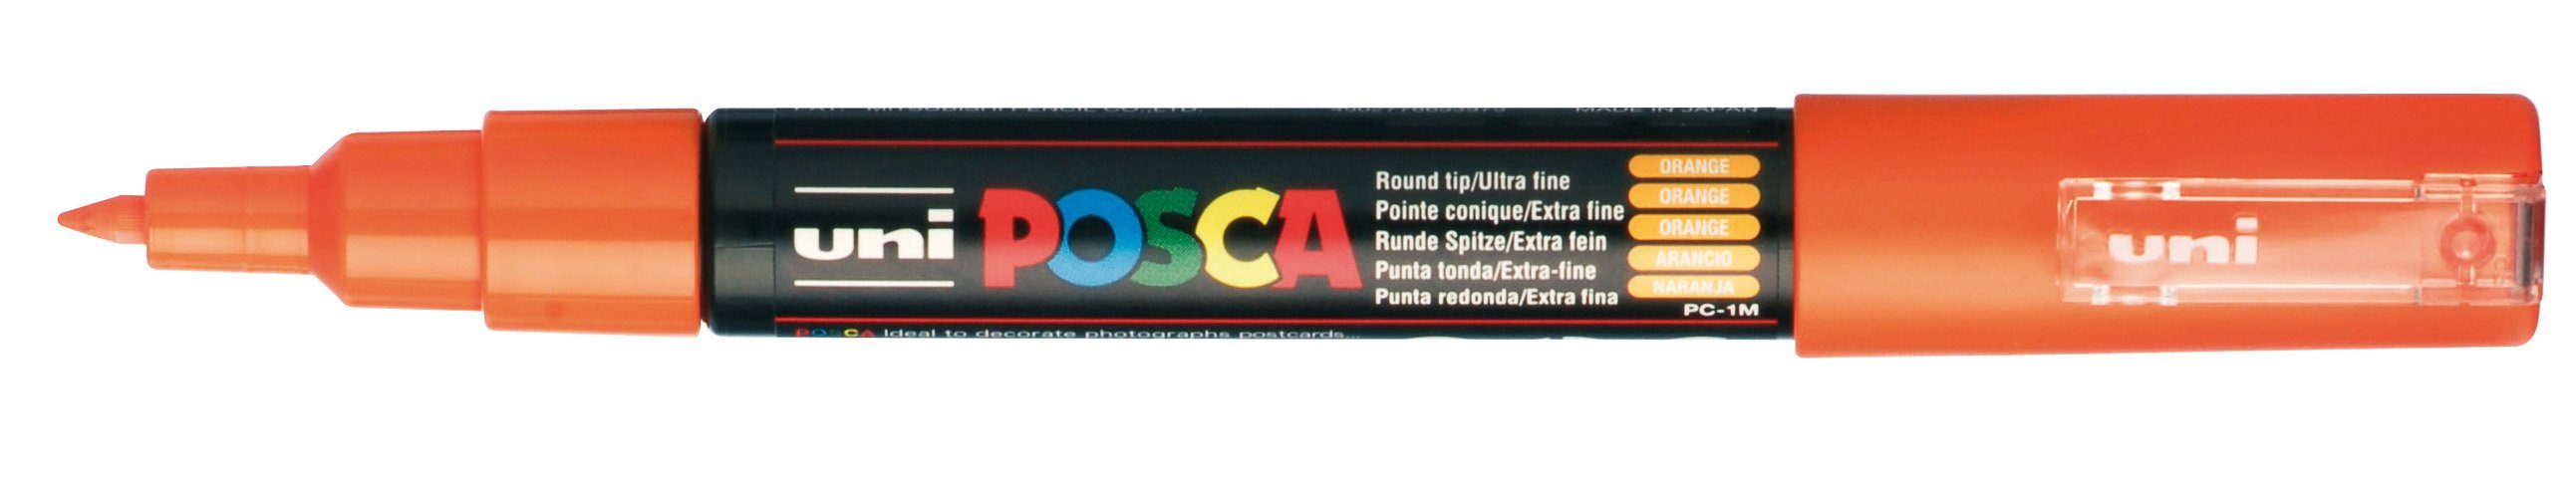 POSCA Marker Marker PC-1MC, Lichtecht, Wasserbasis, Geruchsneutral, Wasserverdünnbar Orange